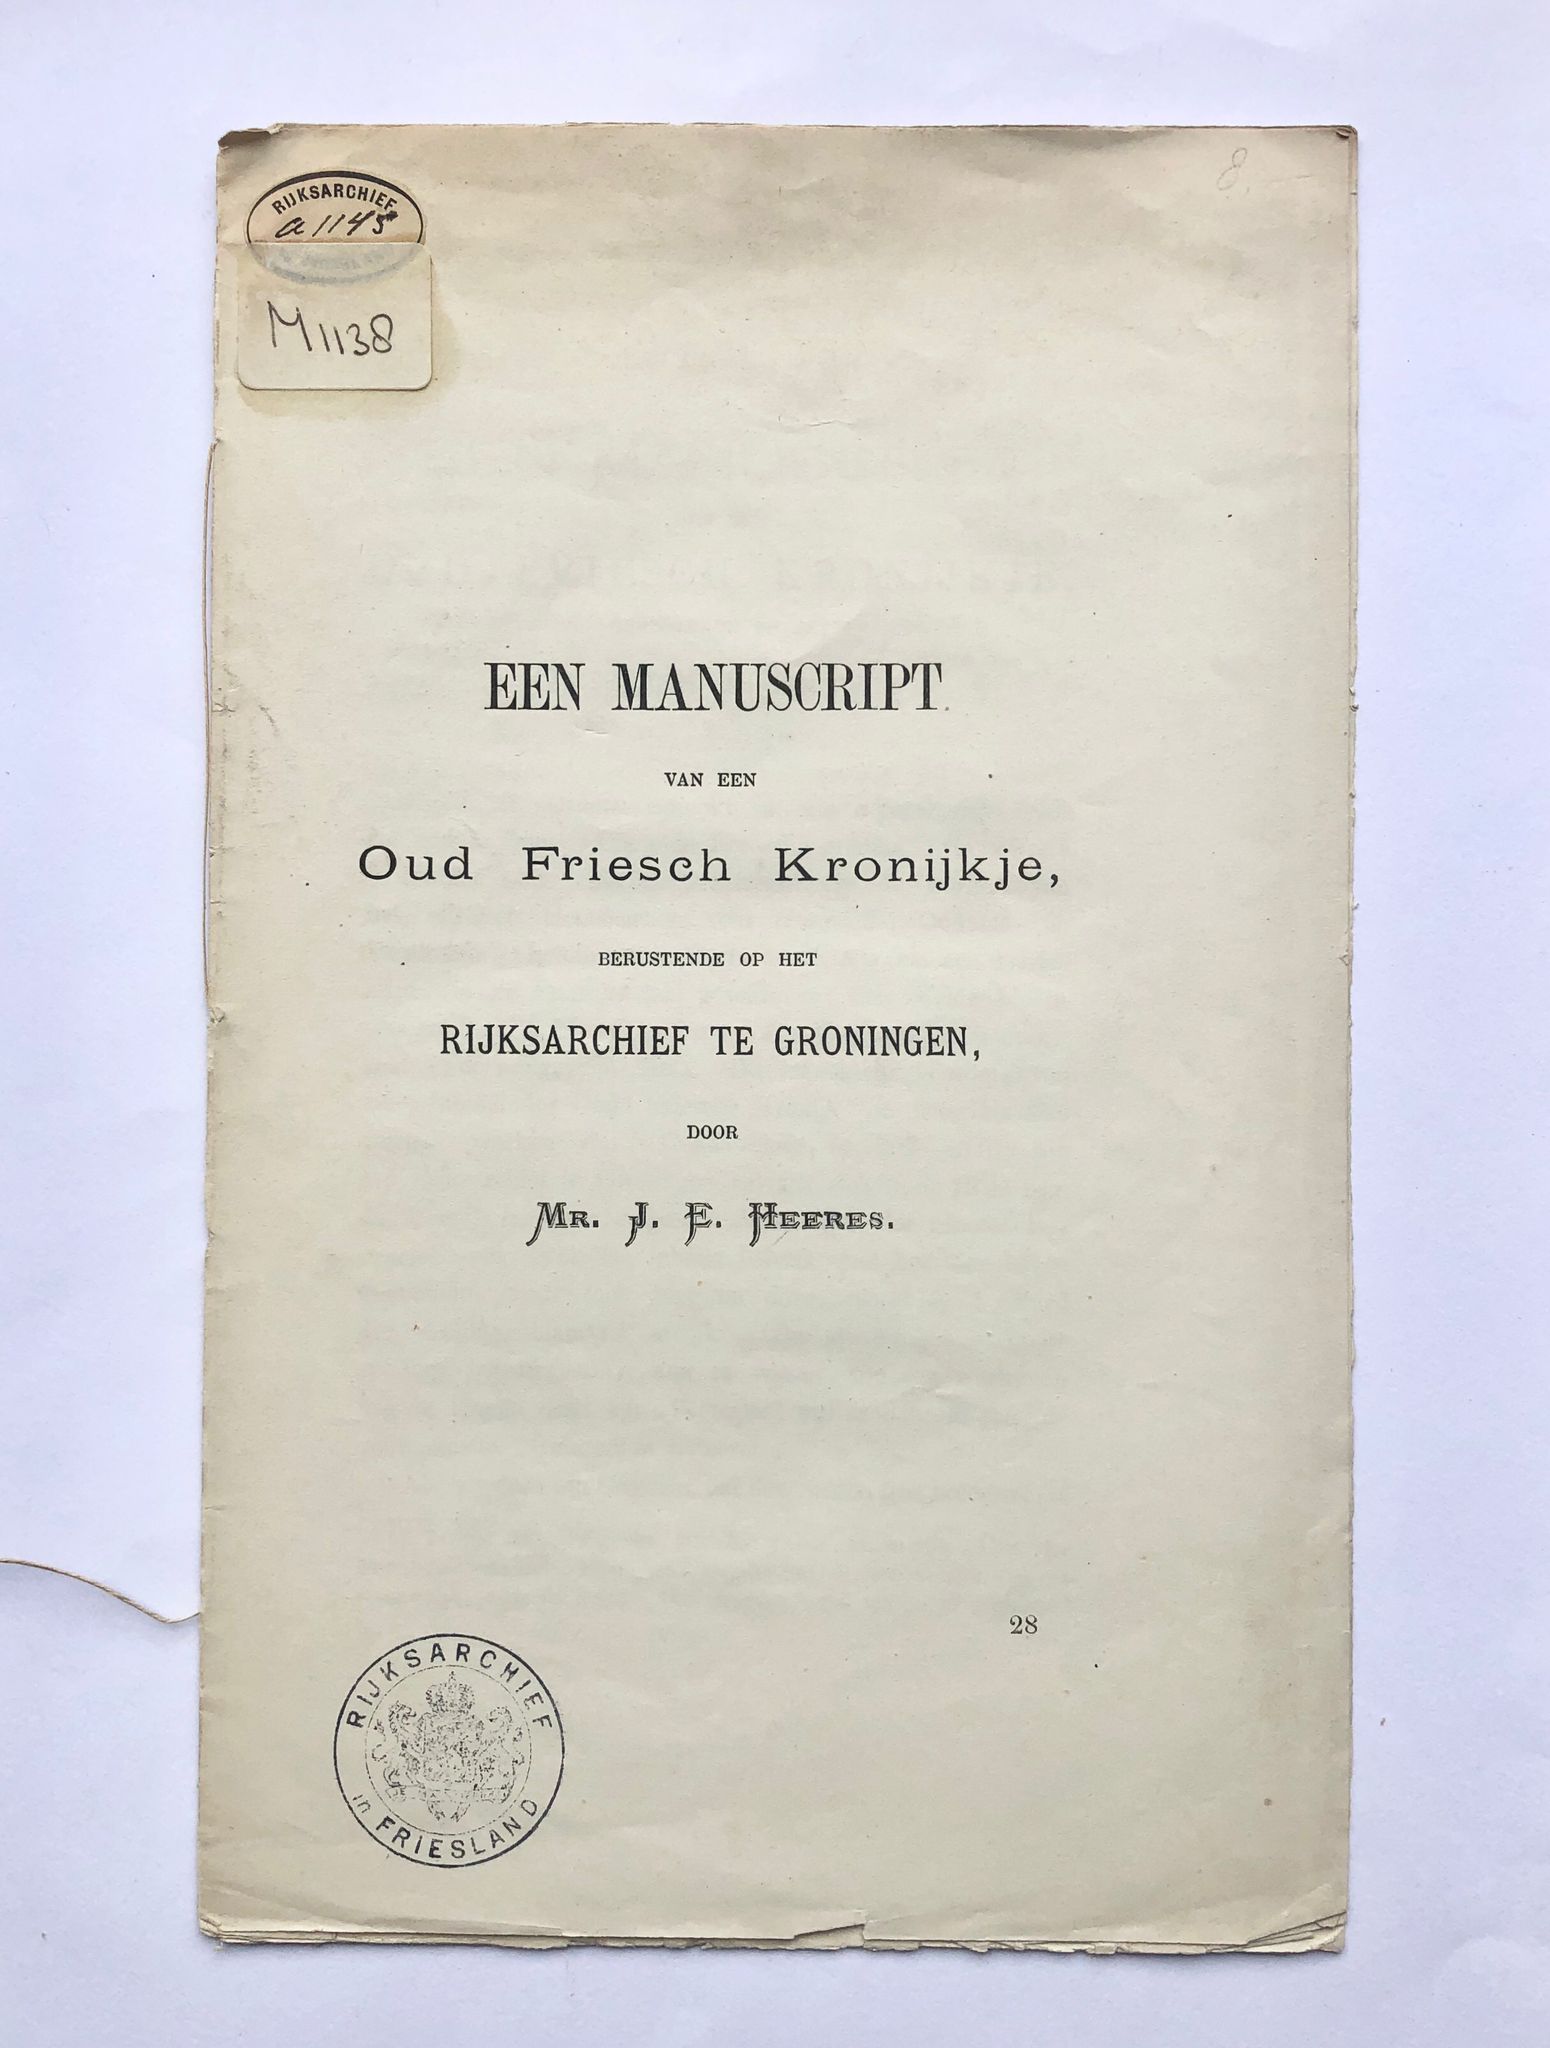 [Friesland, 1885] Een manuscript van een Oud Friesch Kronijkje, berustende op het Rijksarchief te Groningen, 1885, p. 440 - 448.